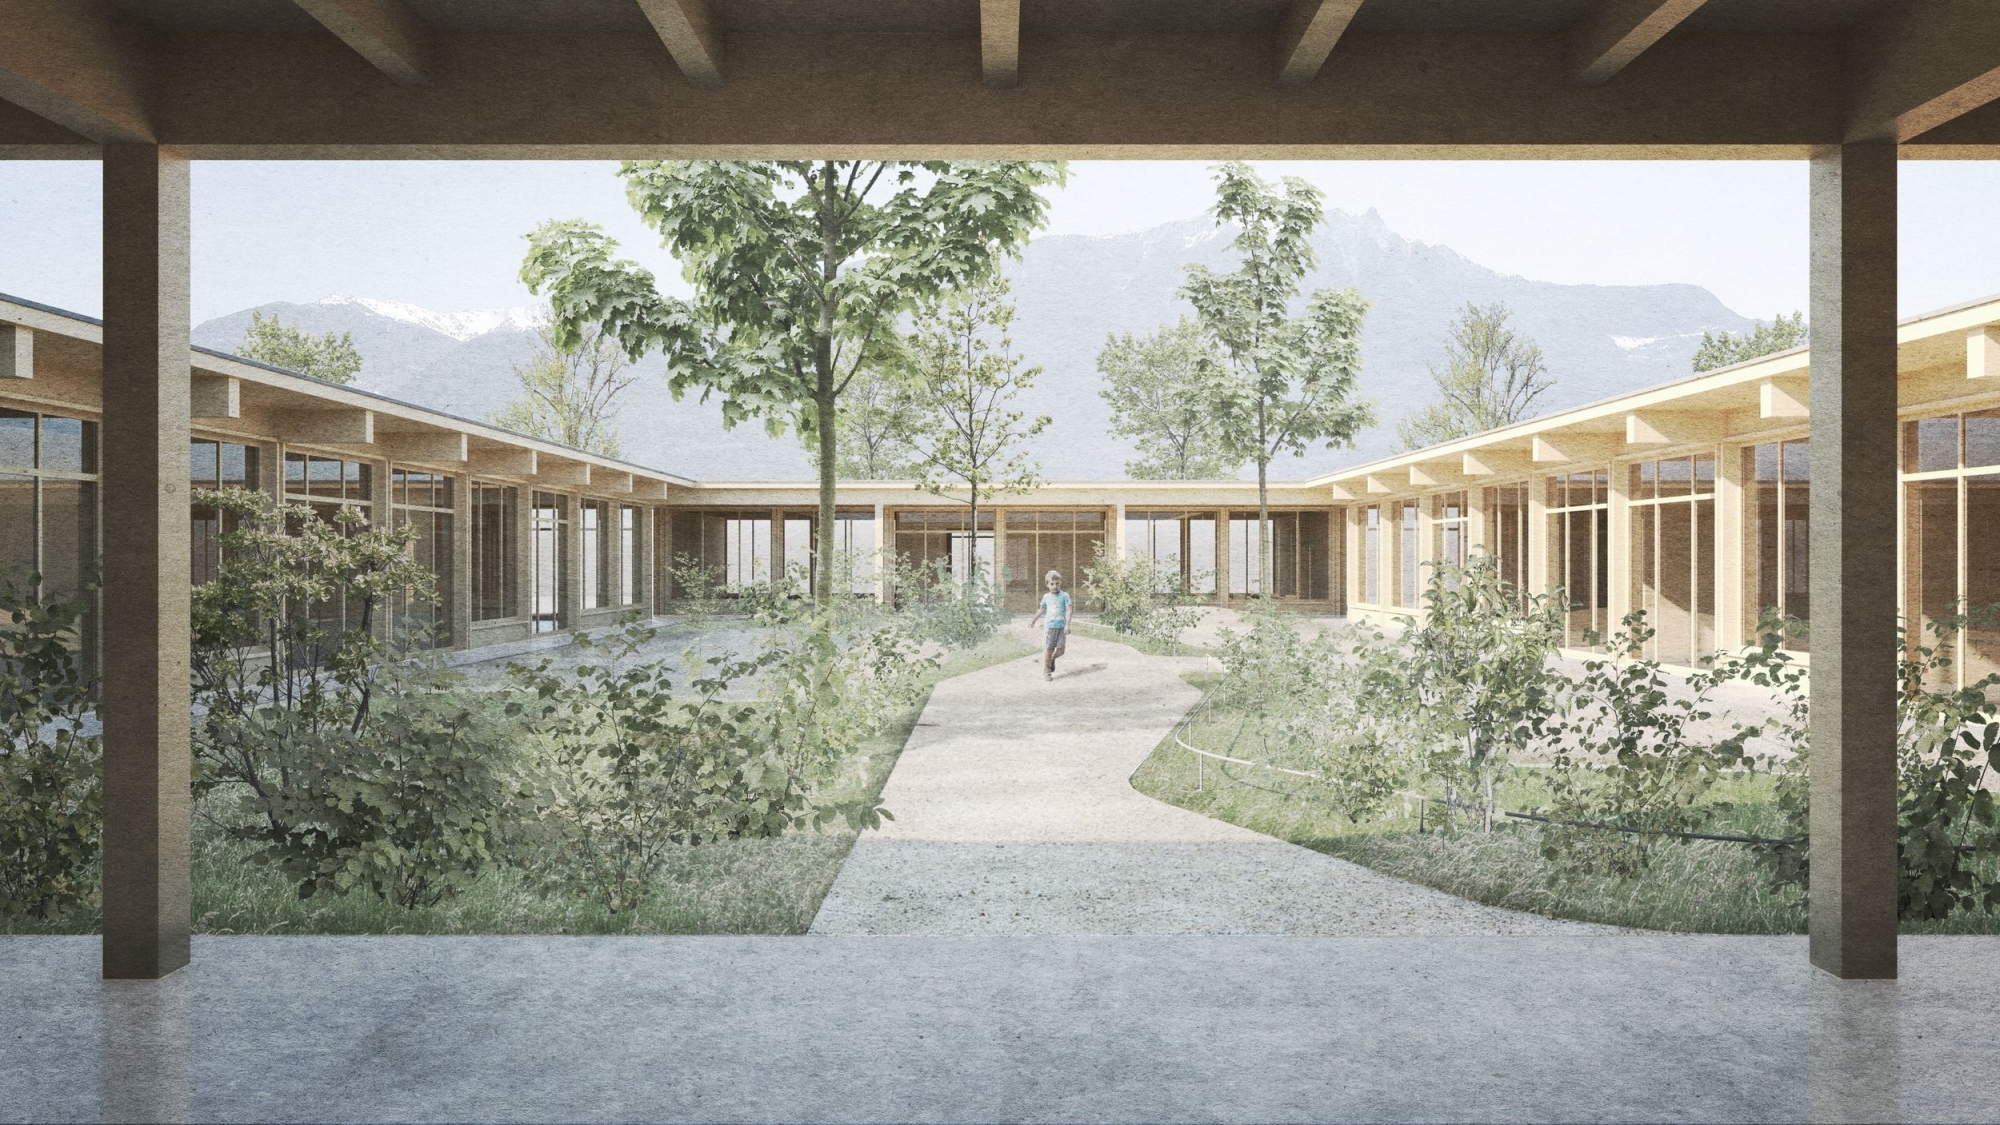 La future crèche-UAPE de Saillon, en ossature bois, sera formée de quatre bâtiments distincts entourant un jardin central réservé aux enfants.